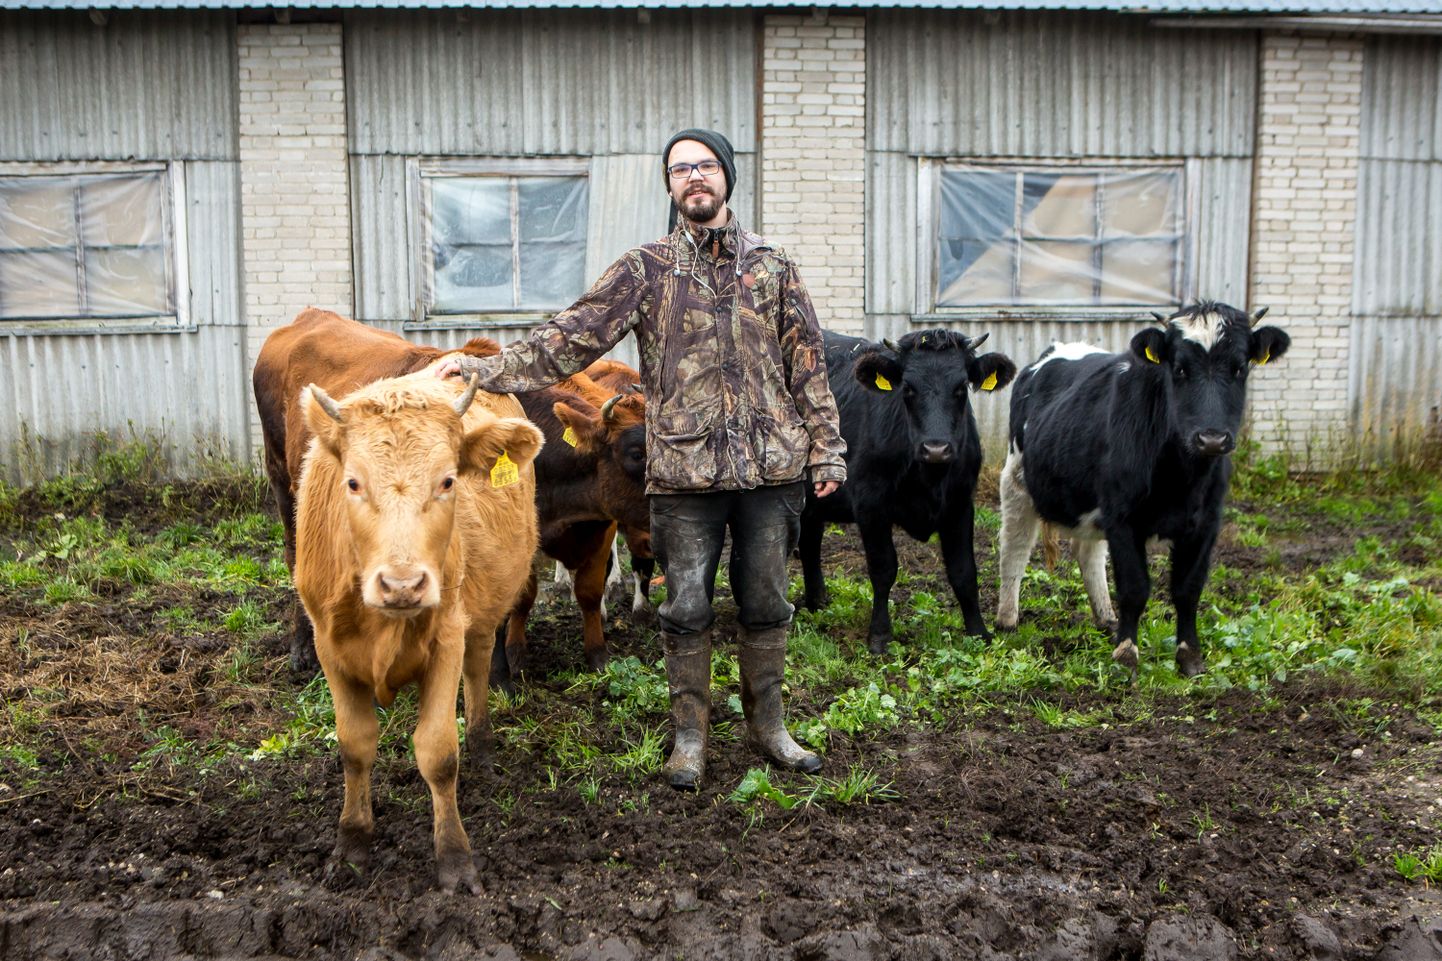 LÕPU ALGUS? Noortaluniku toetuse najal piimatootjaks hakanud Kaspar Põlluäär ei ole oma valiku õigsuses enam kindel ja kaalub karja likvideerimist.